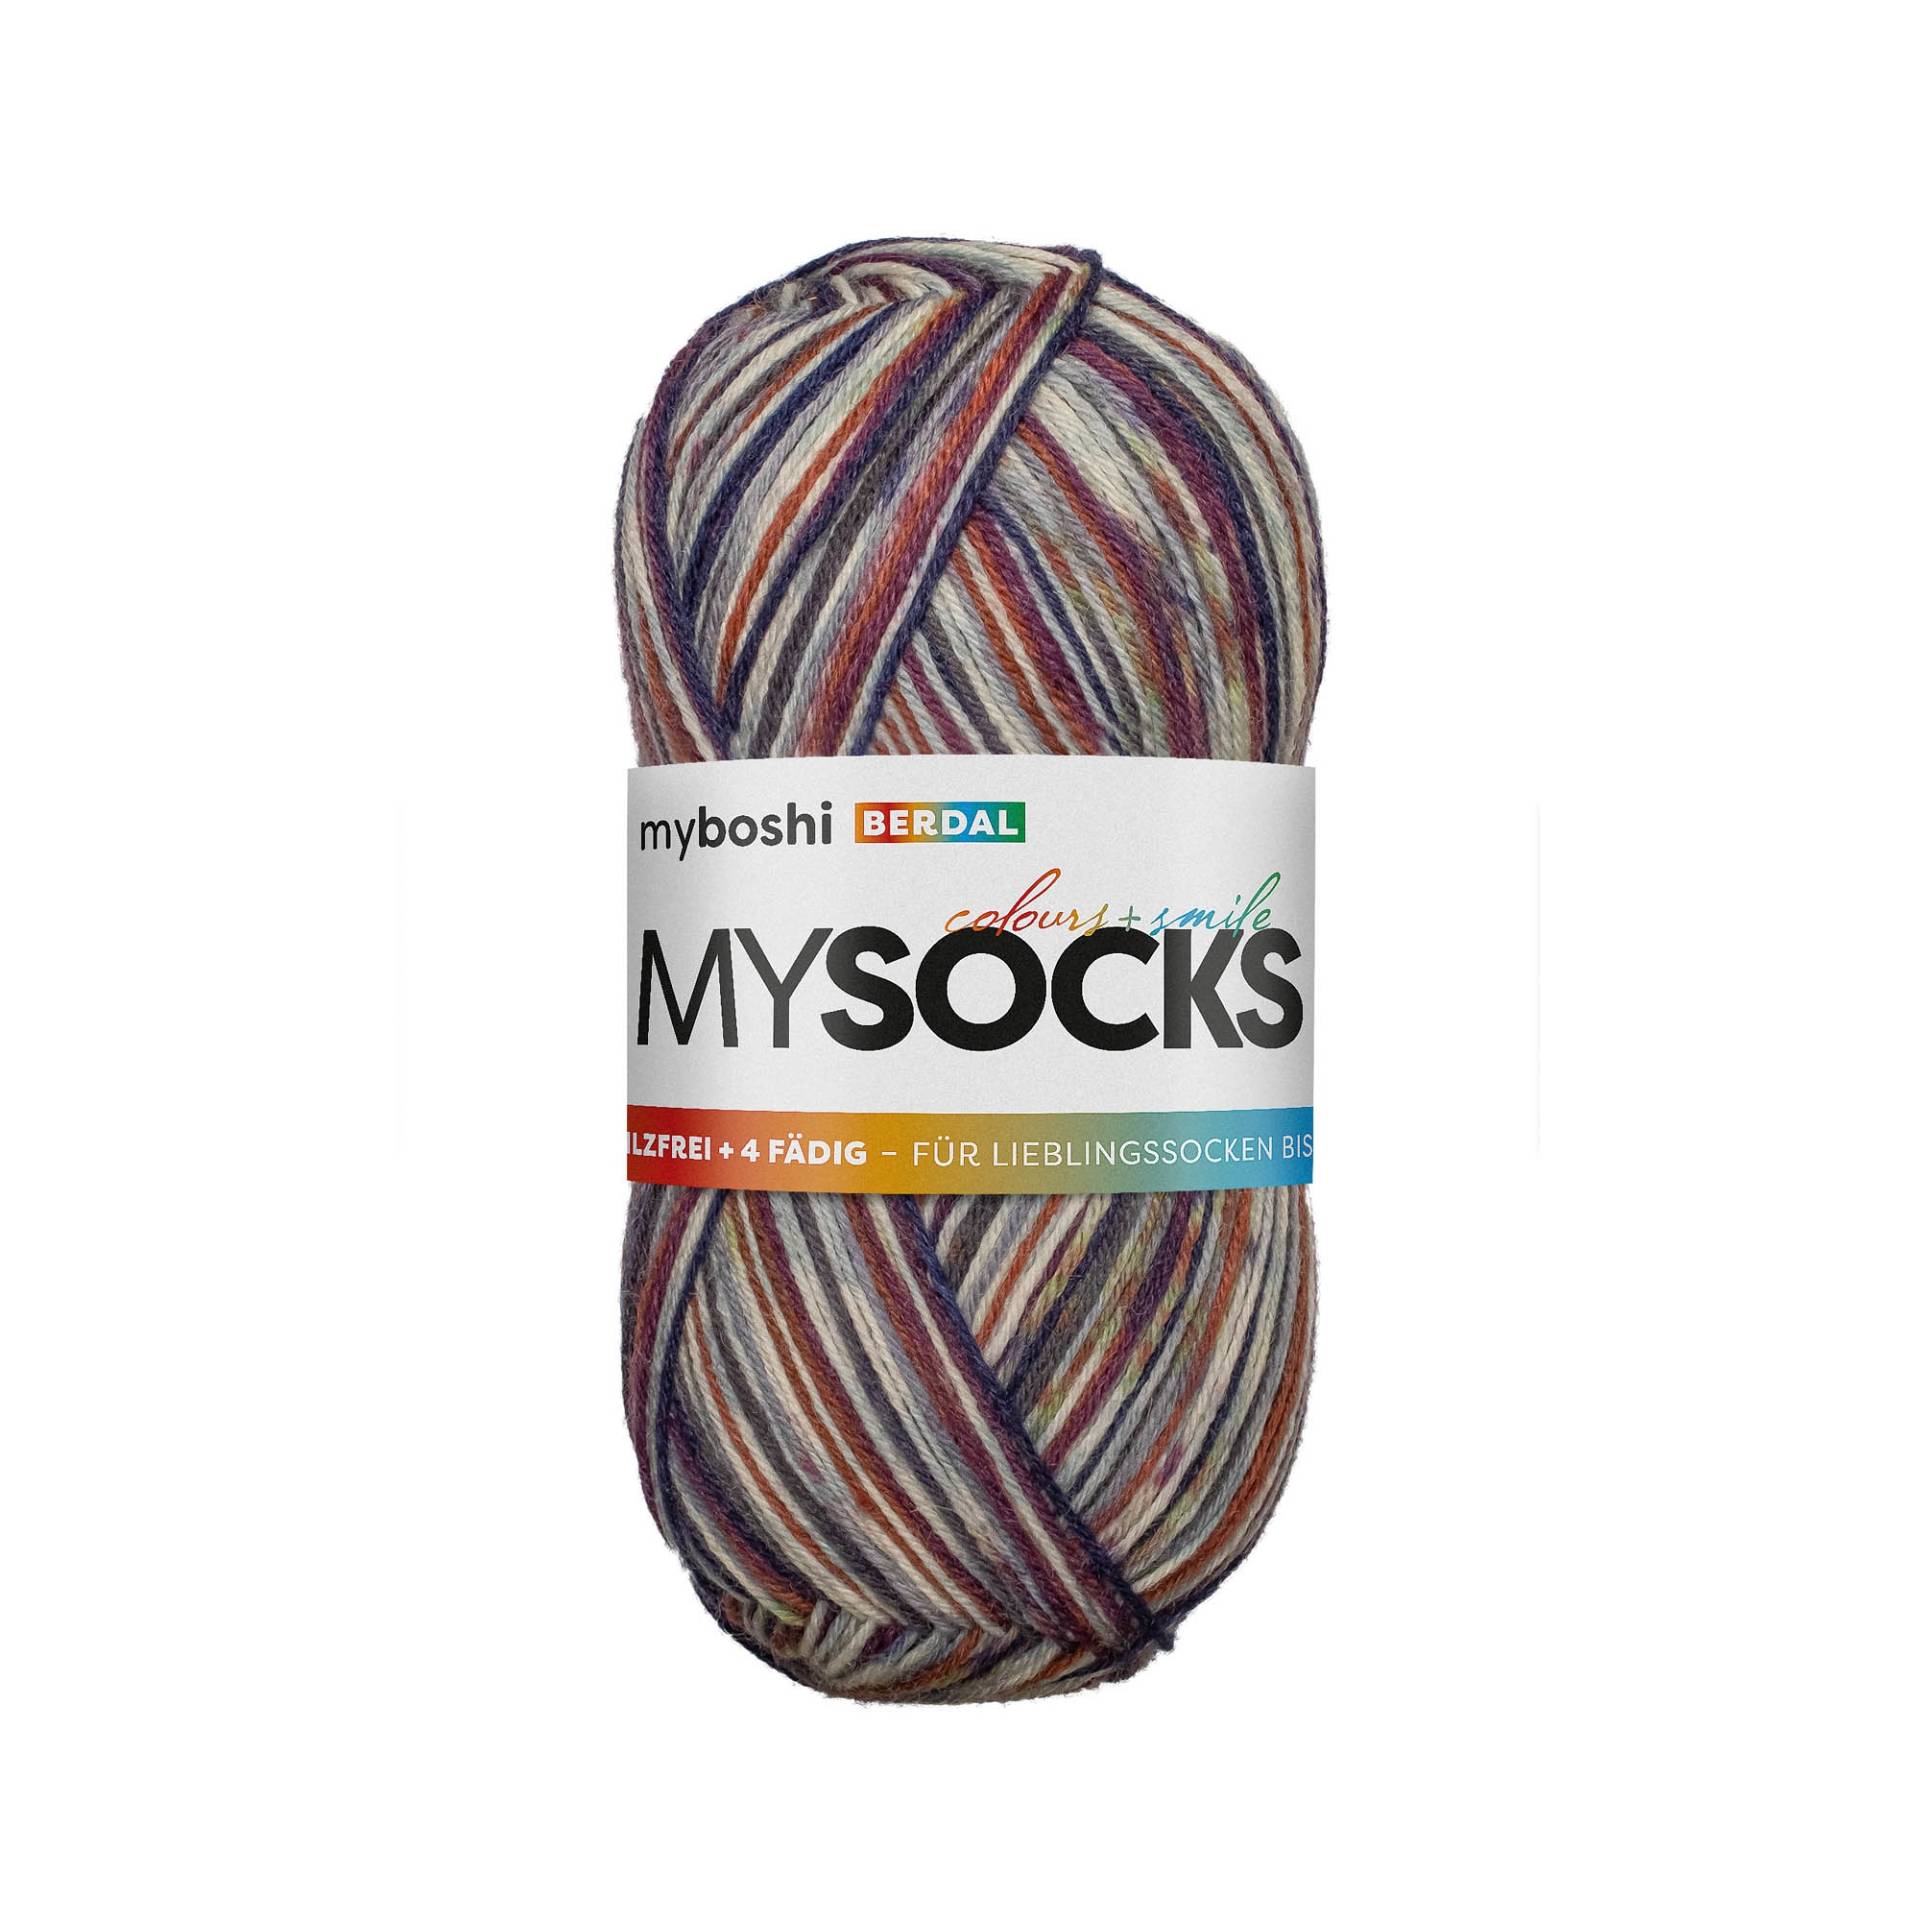 myboshi mysocks 4-fädige Sockenwolle Berdal 100g, rot-grau von Stoffe Hemmers